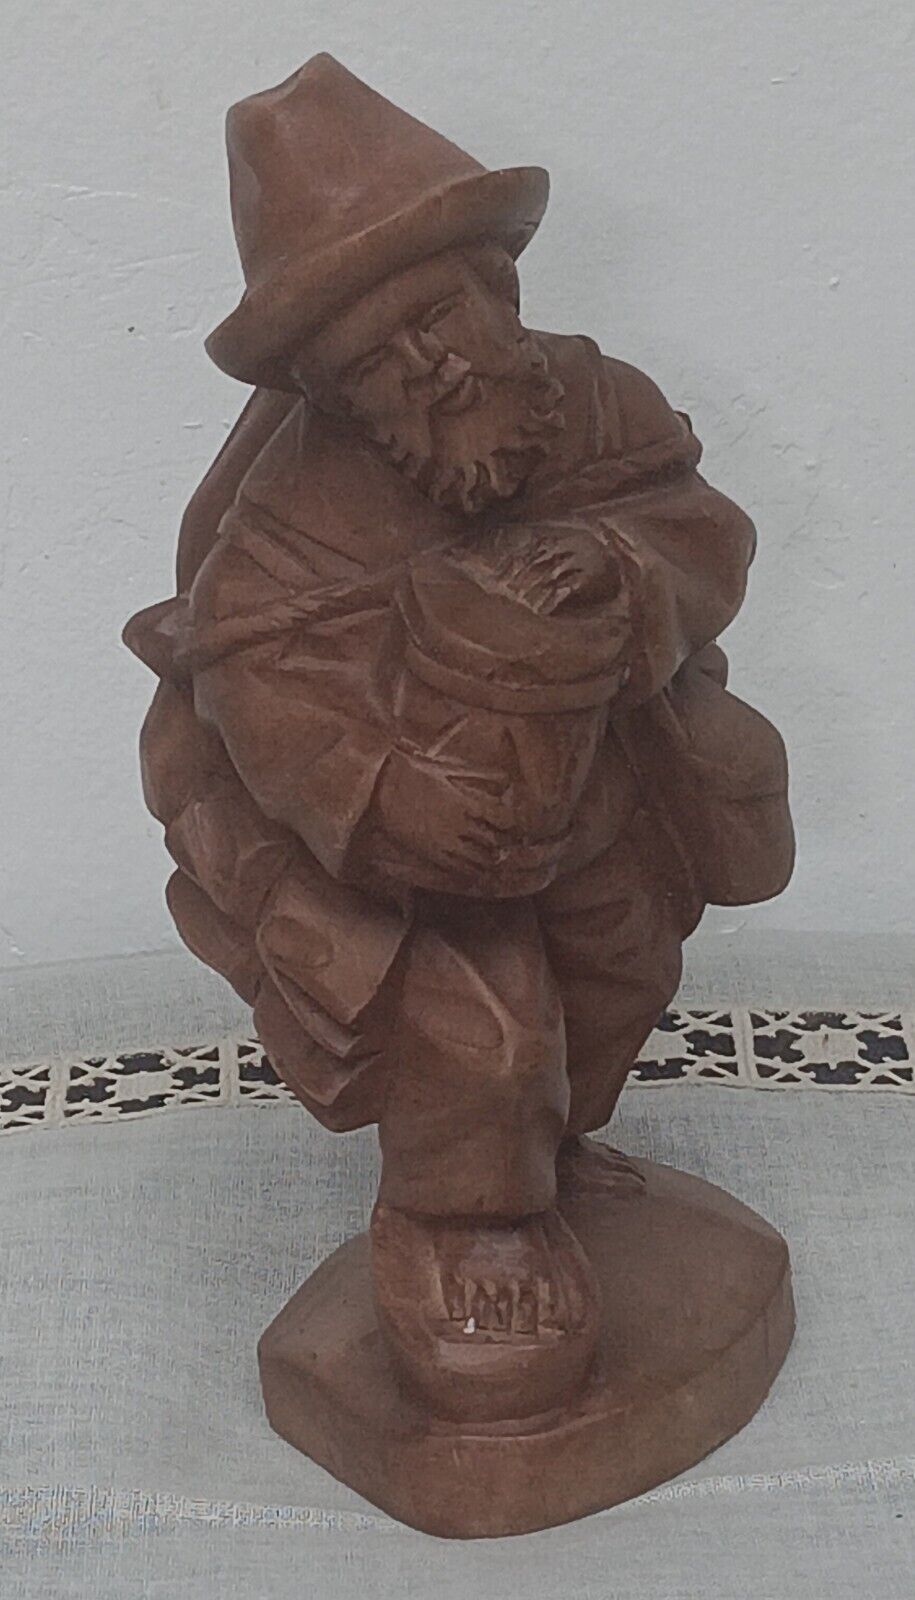 VTG Hand Carved Wooden Barefooted Traveling Hobo Man Folk Art Statue Figurine